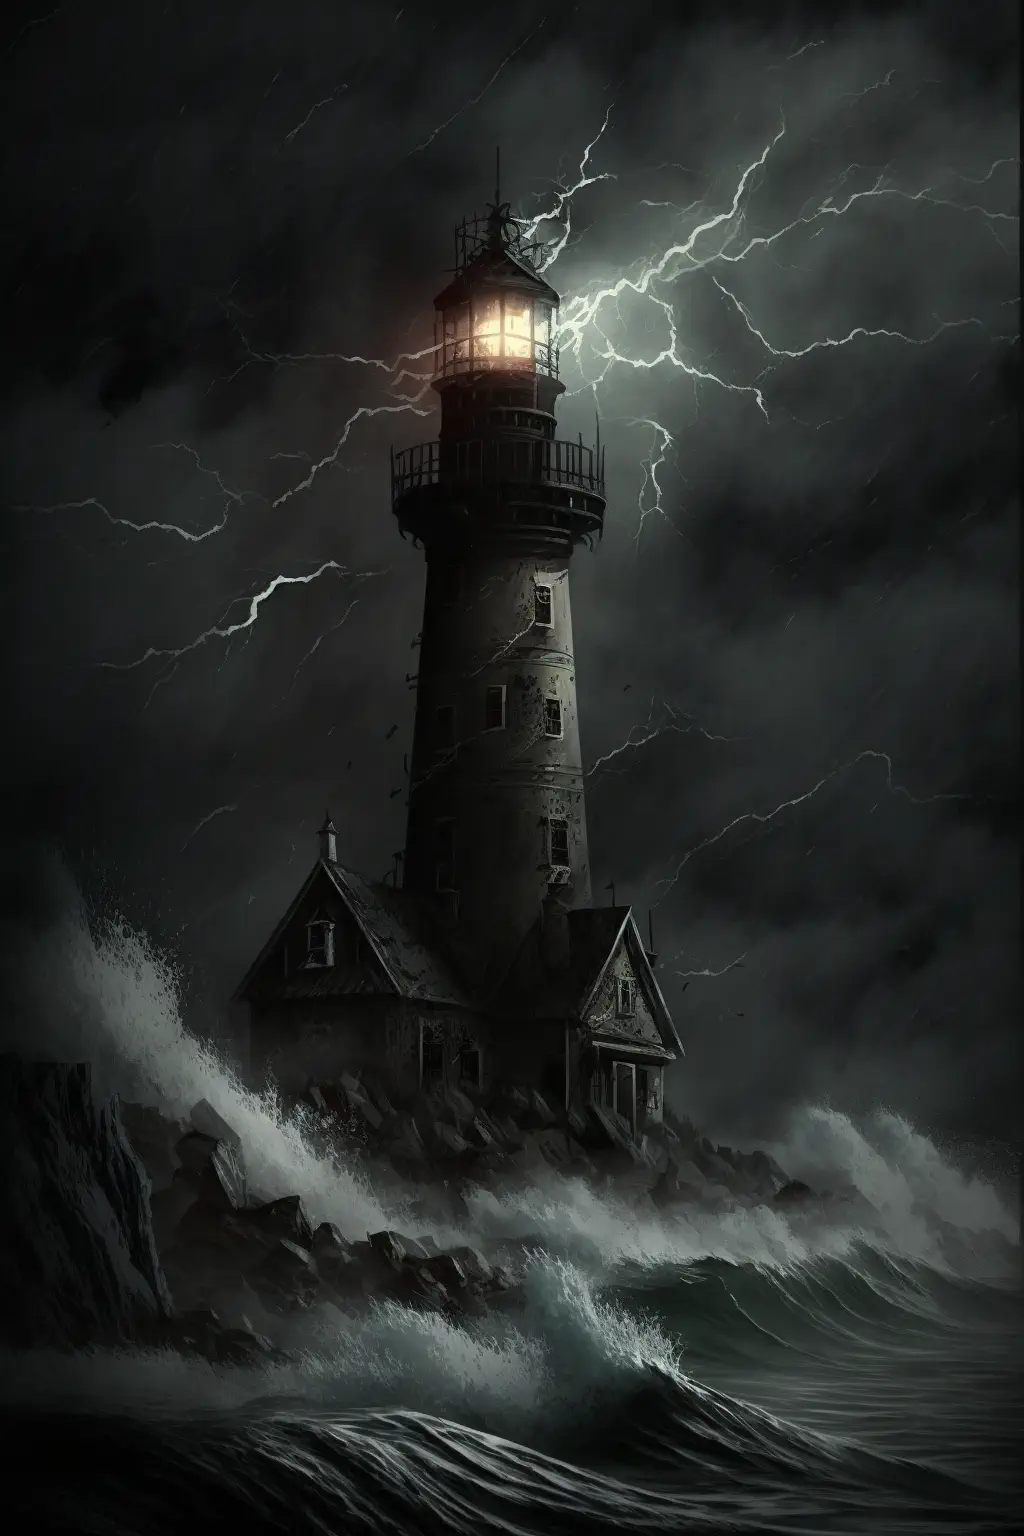 Drac0n0_dark_scary_gothic_lighthouse_in_lighting_storm_39175daf-0978-4dea-b573-bc7df4c69f43